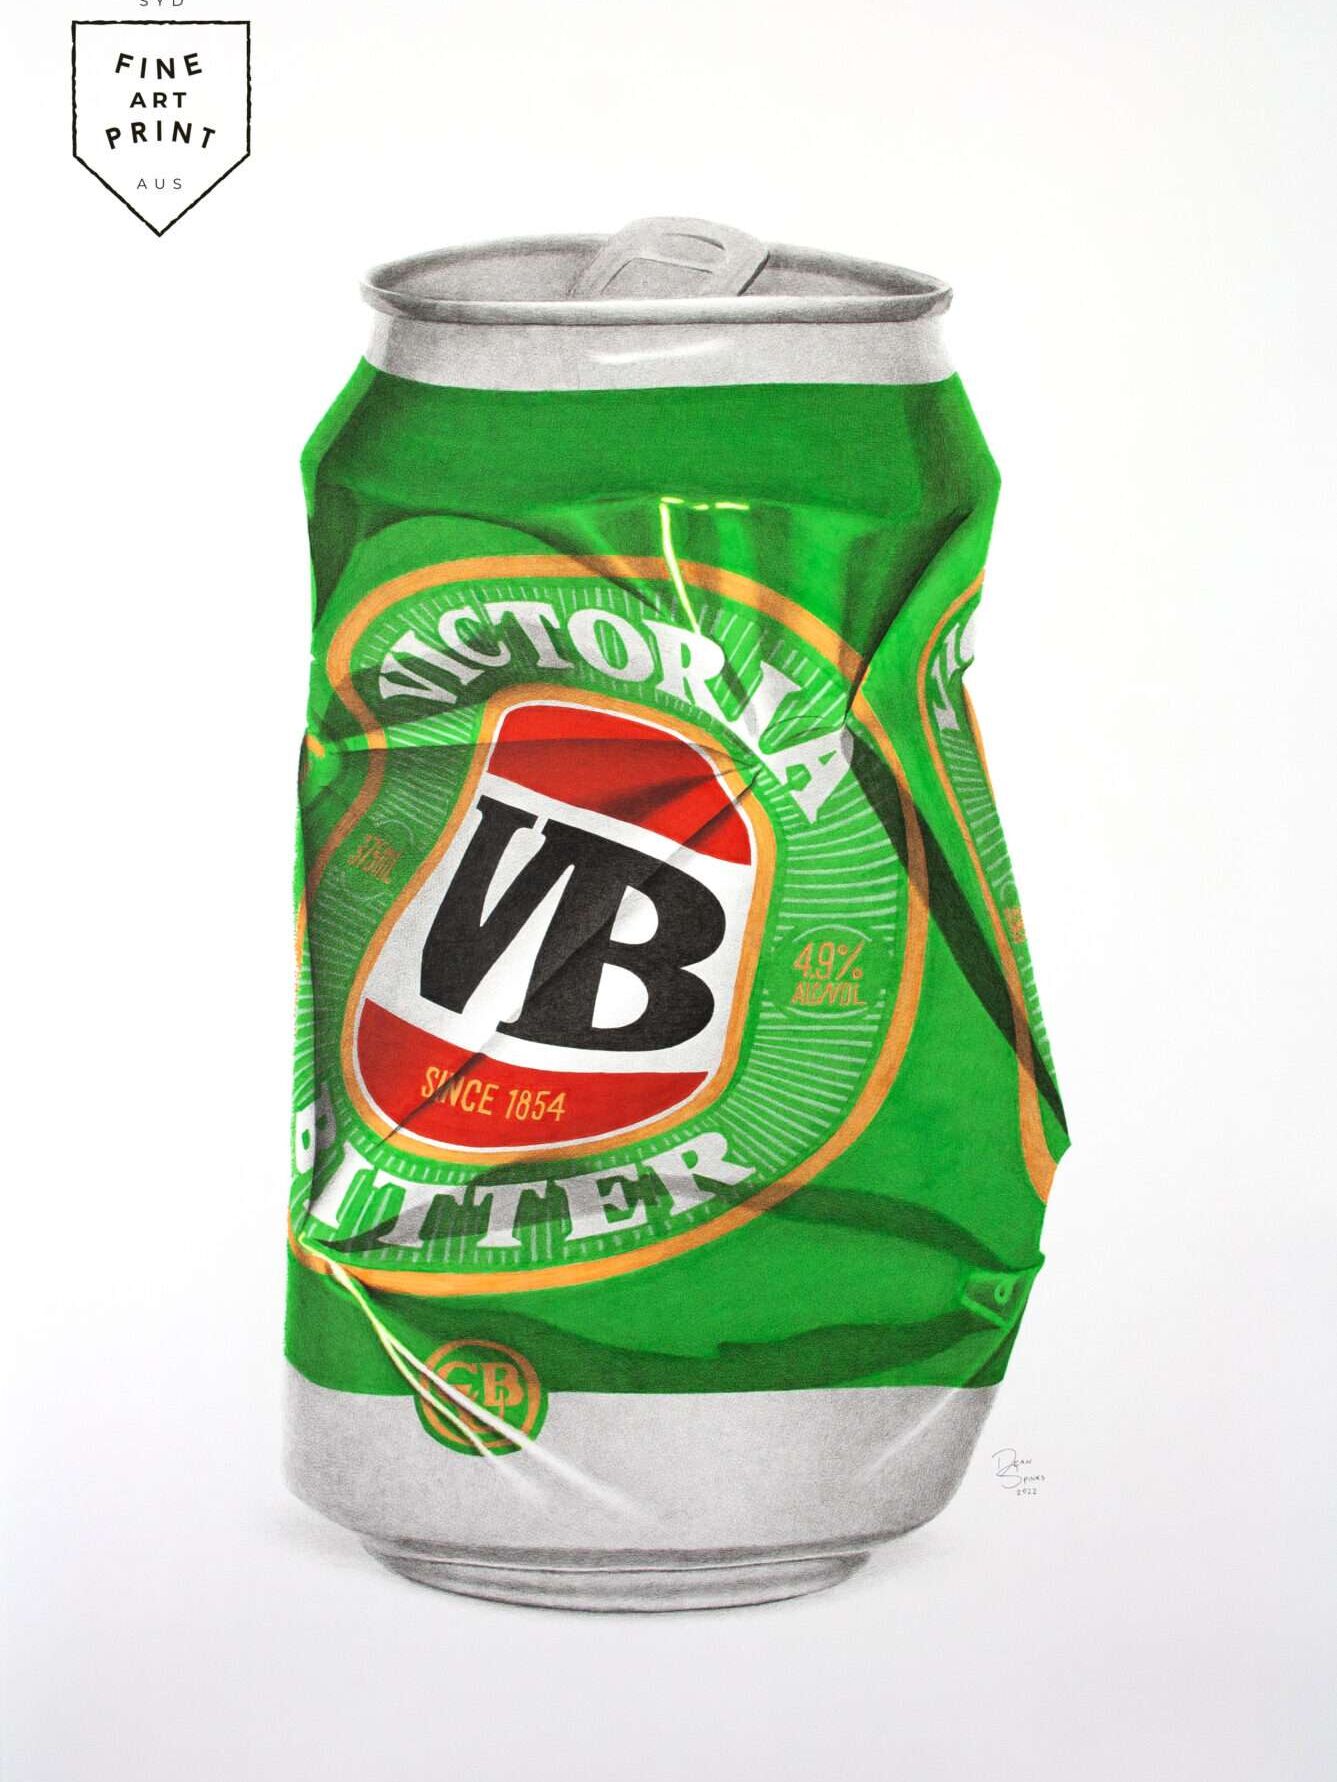 VB beer can photorealistic drawing art print